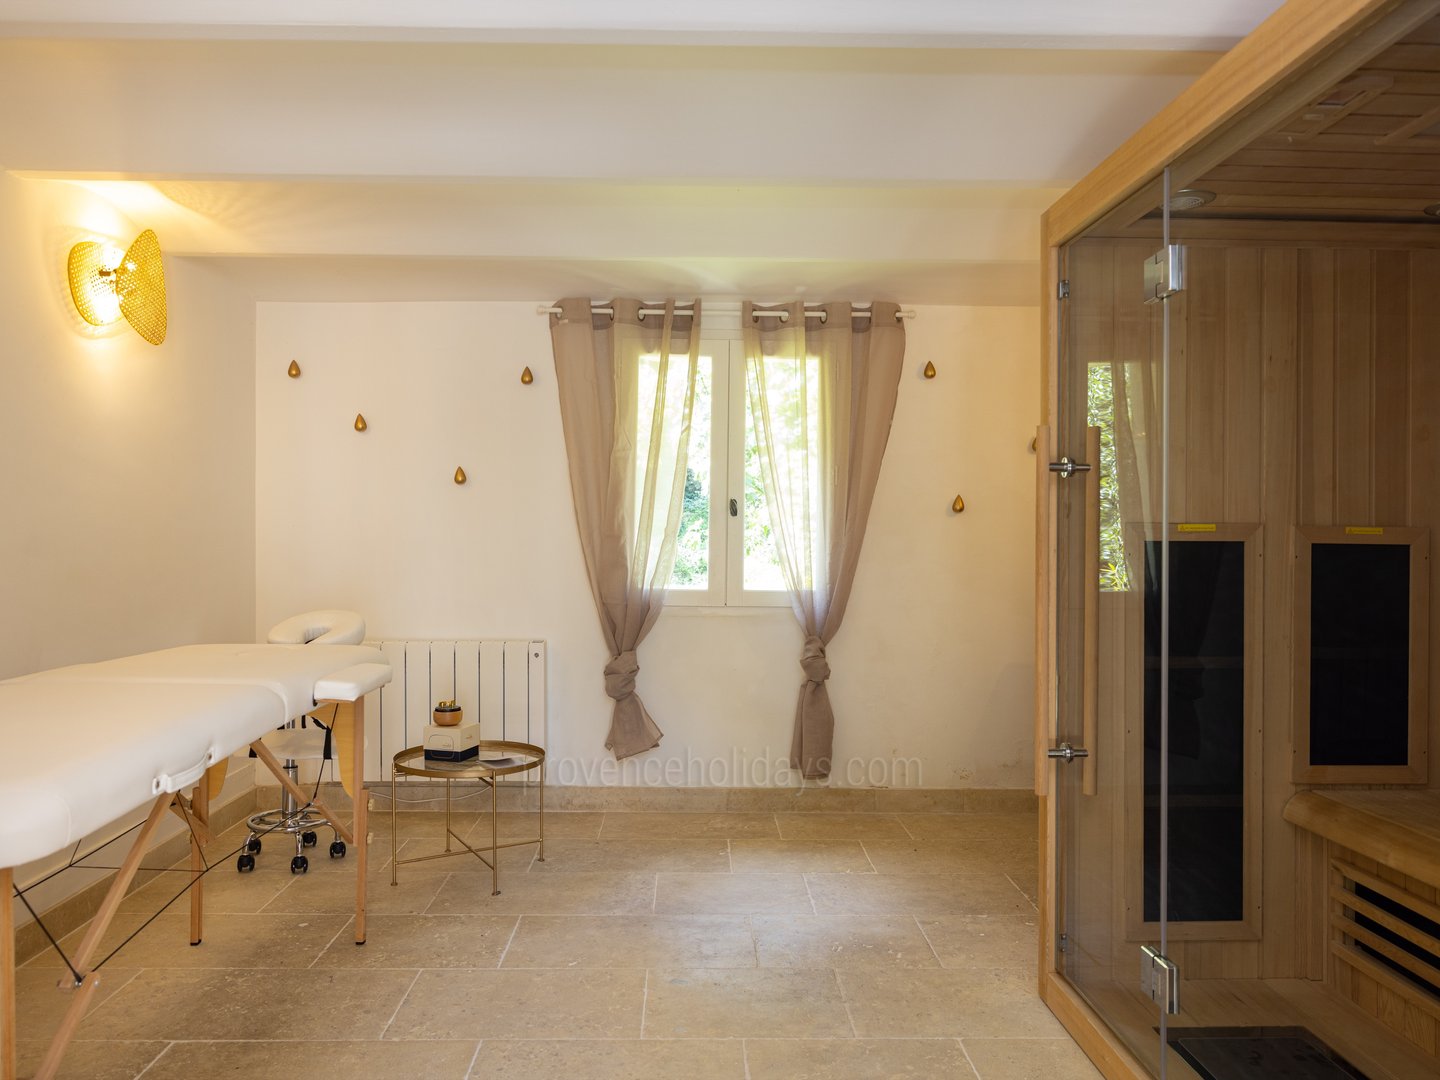 44 - Petite Bastide de Goult: Villa: Bedroom